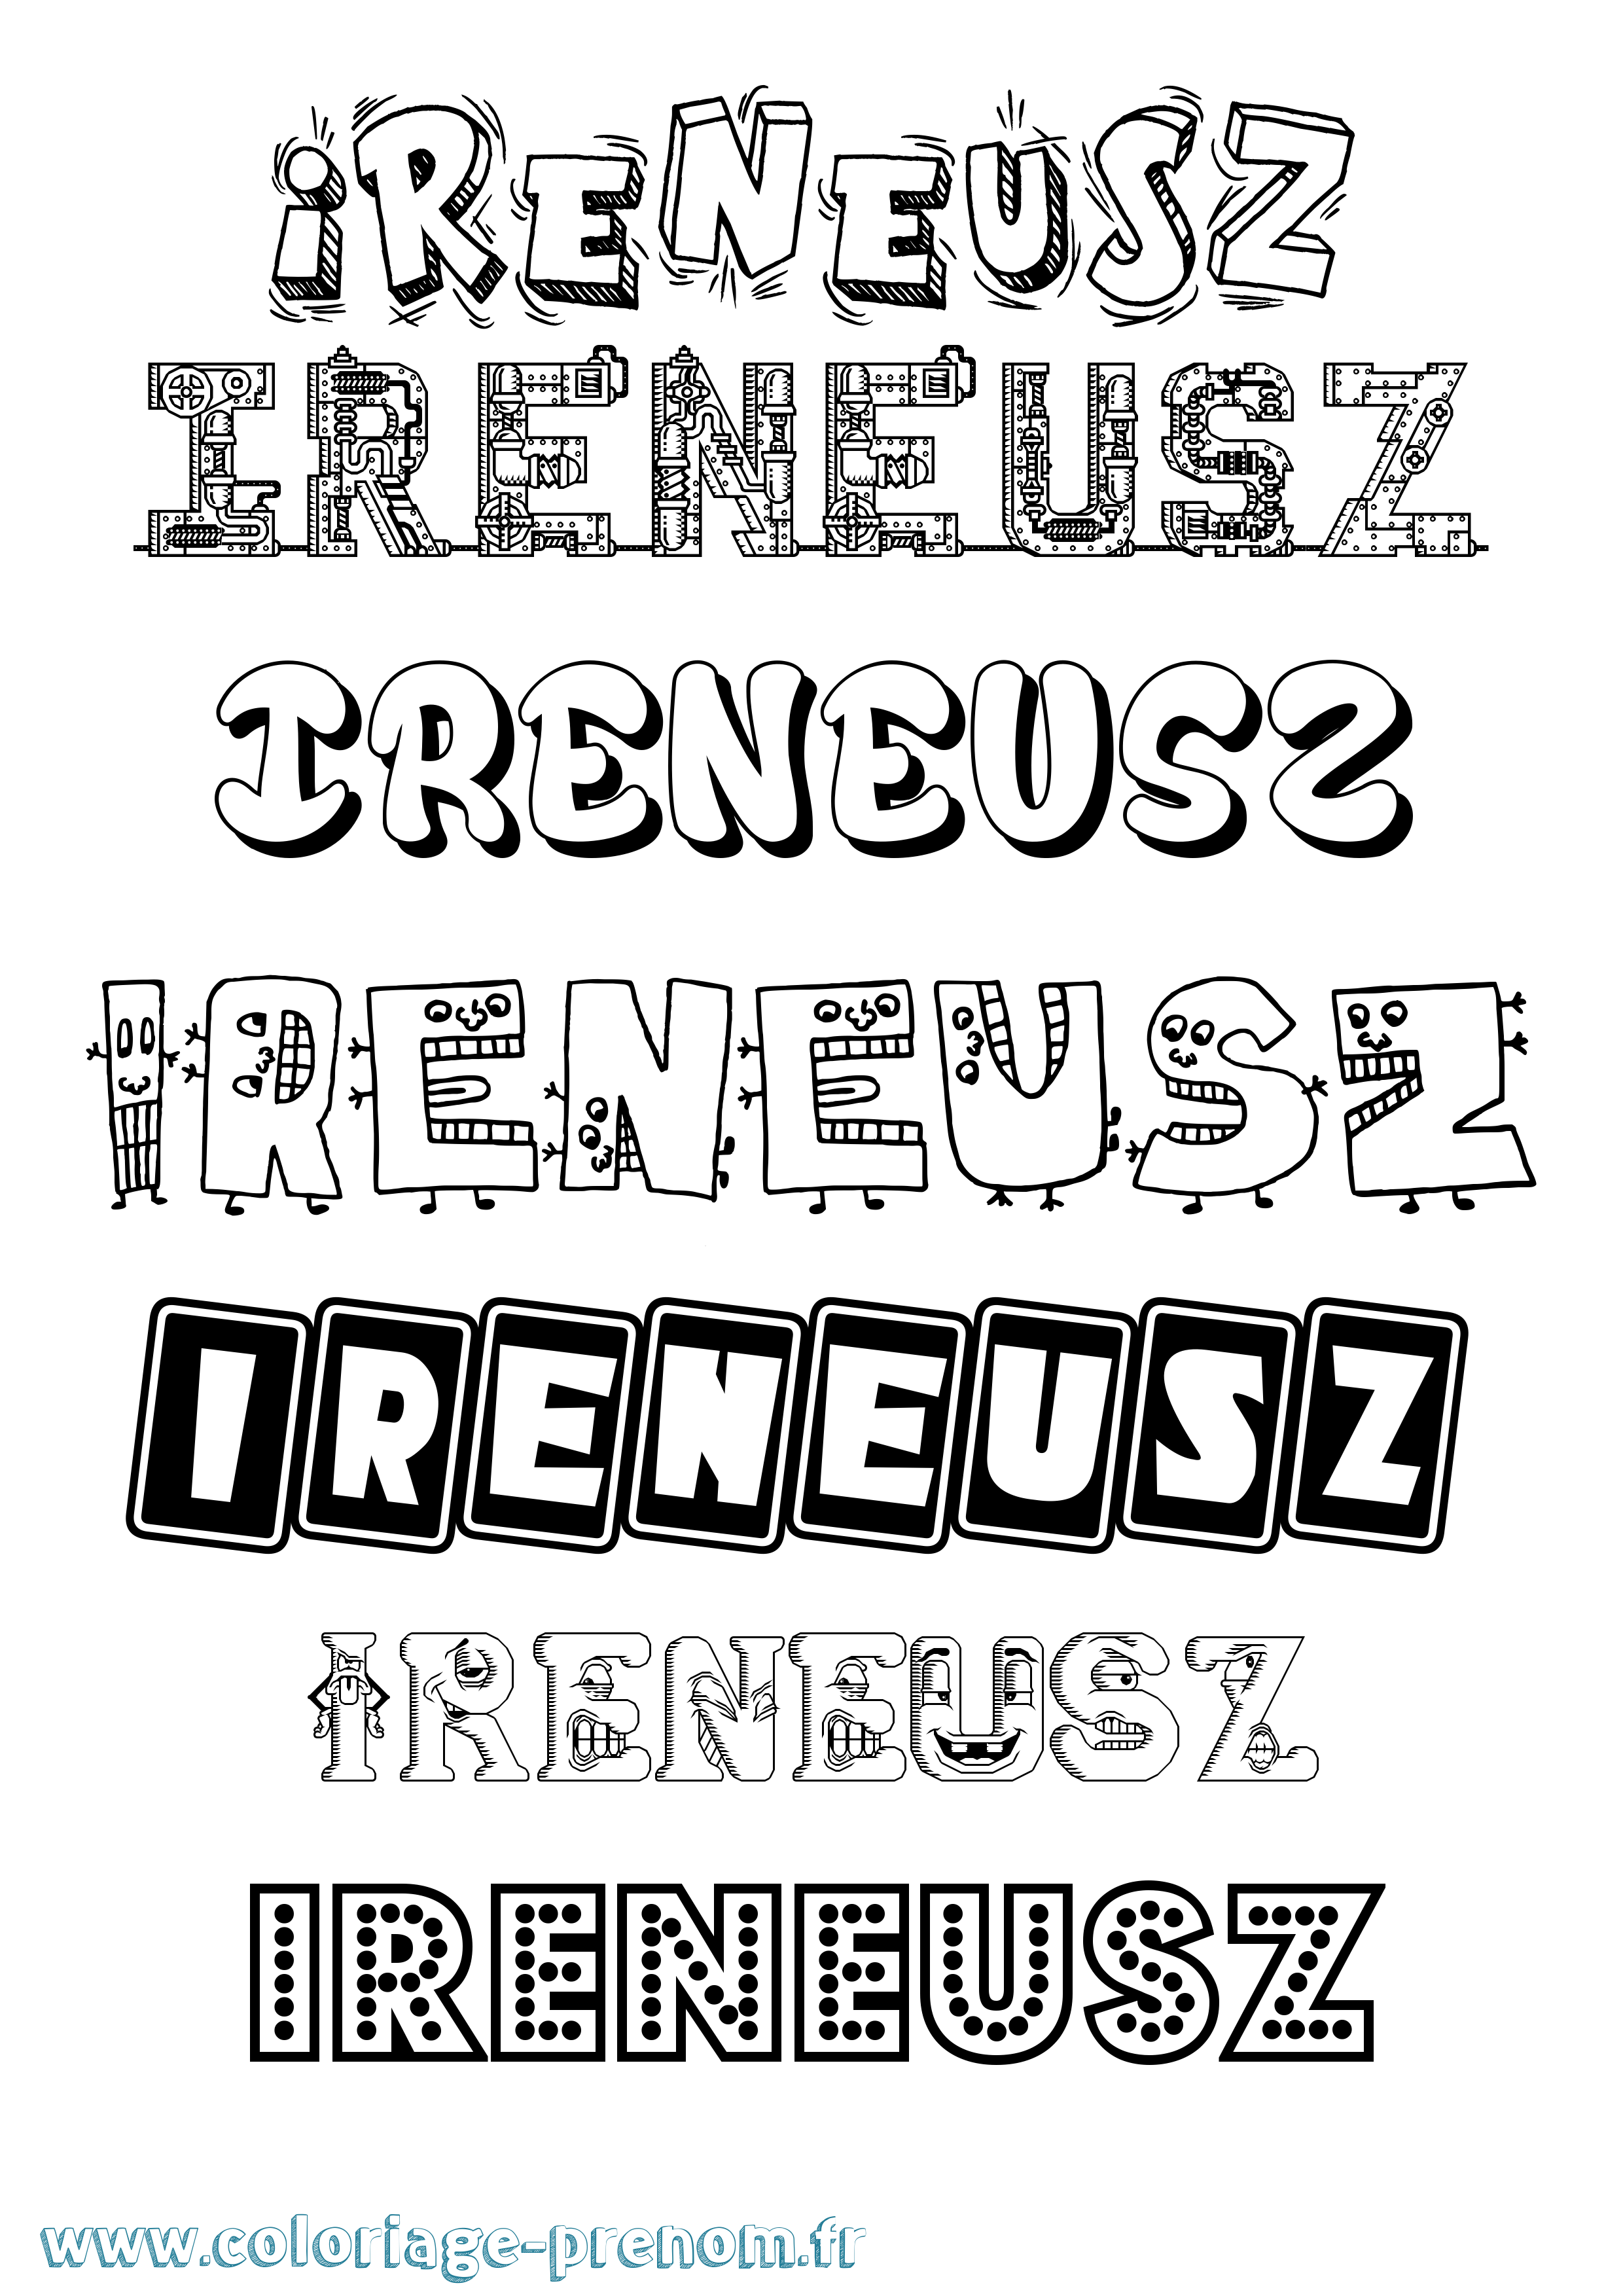 Coloriage prénom Ireneusz Fun